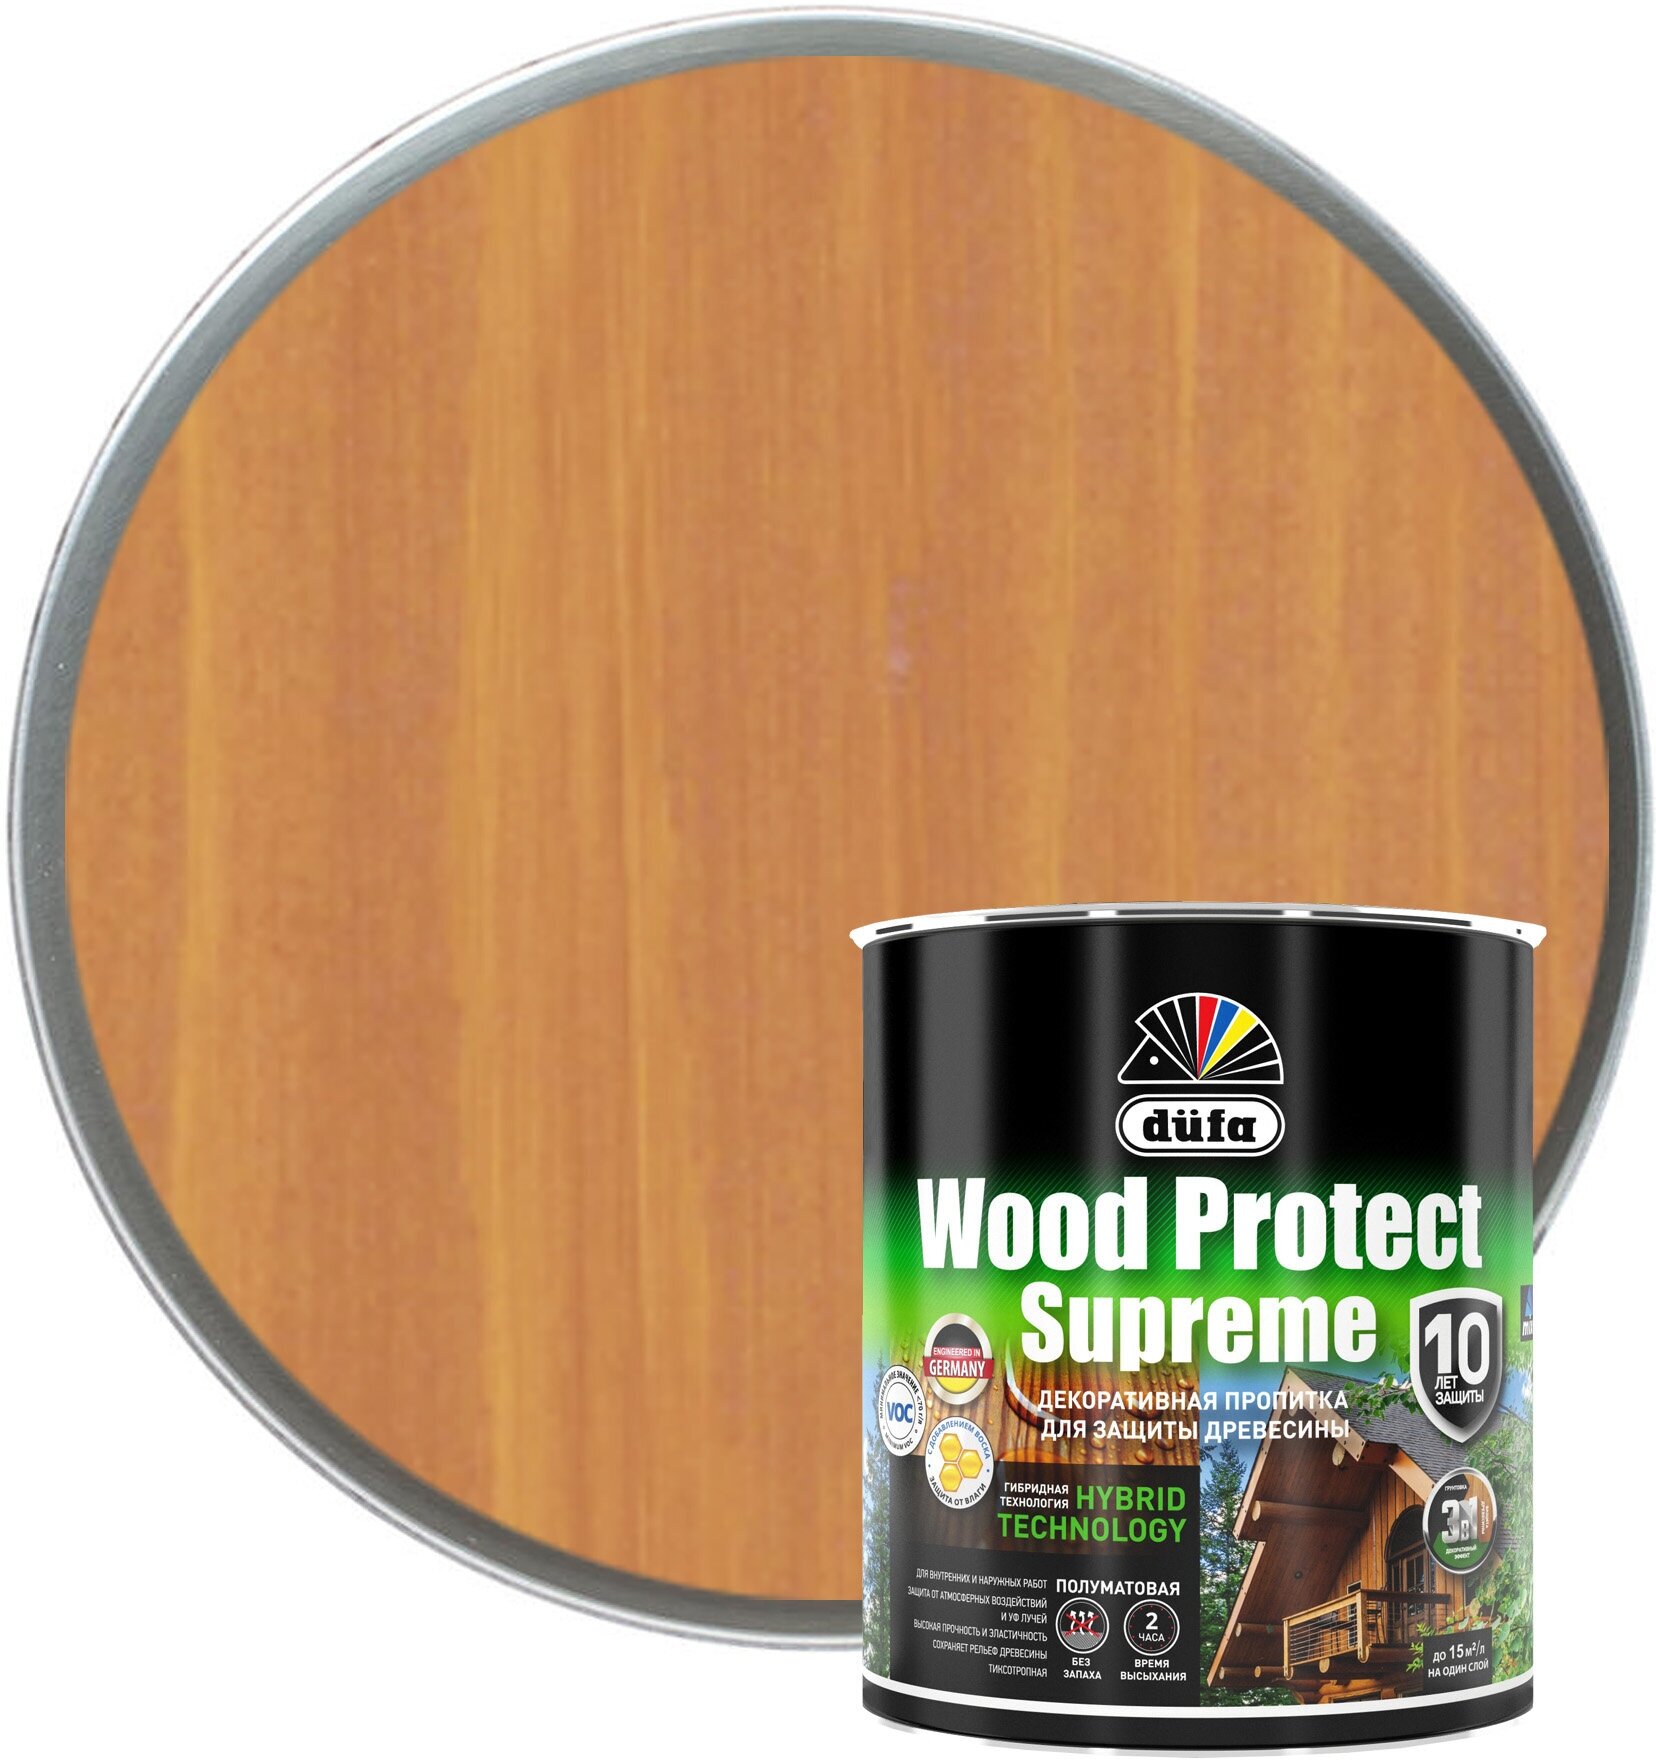 Пропитка декоративная для защиты древесины Dufa Wood Protect Supreme сибирская лиственница 0,75 л